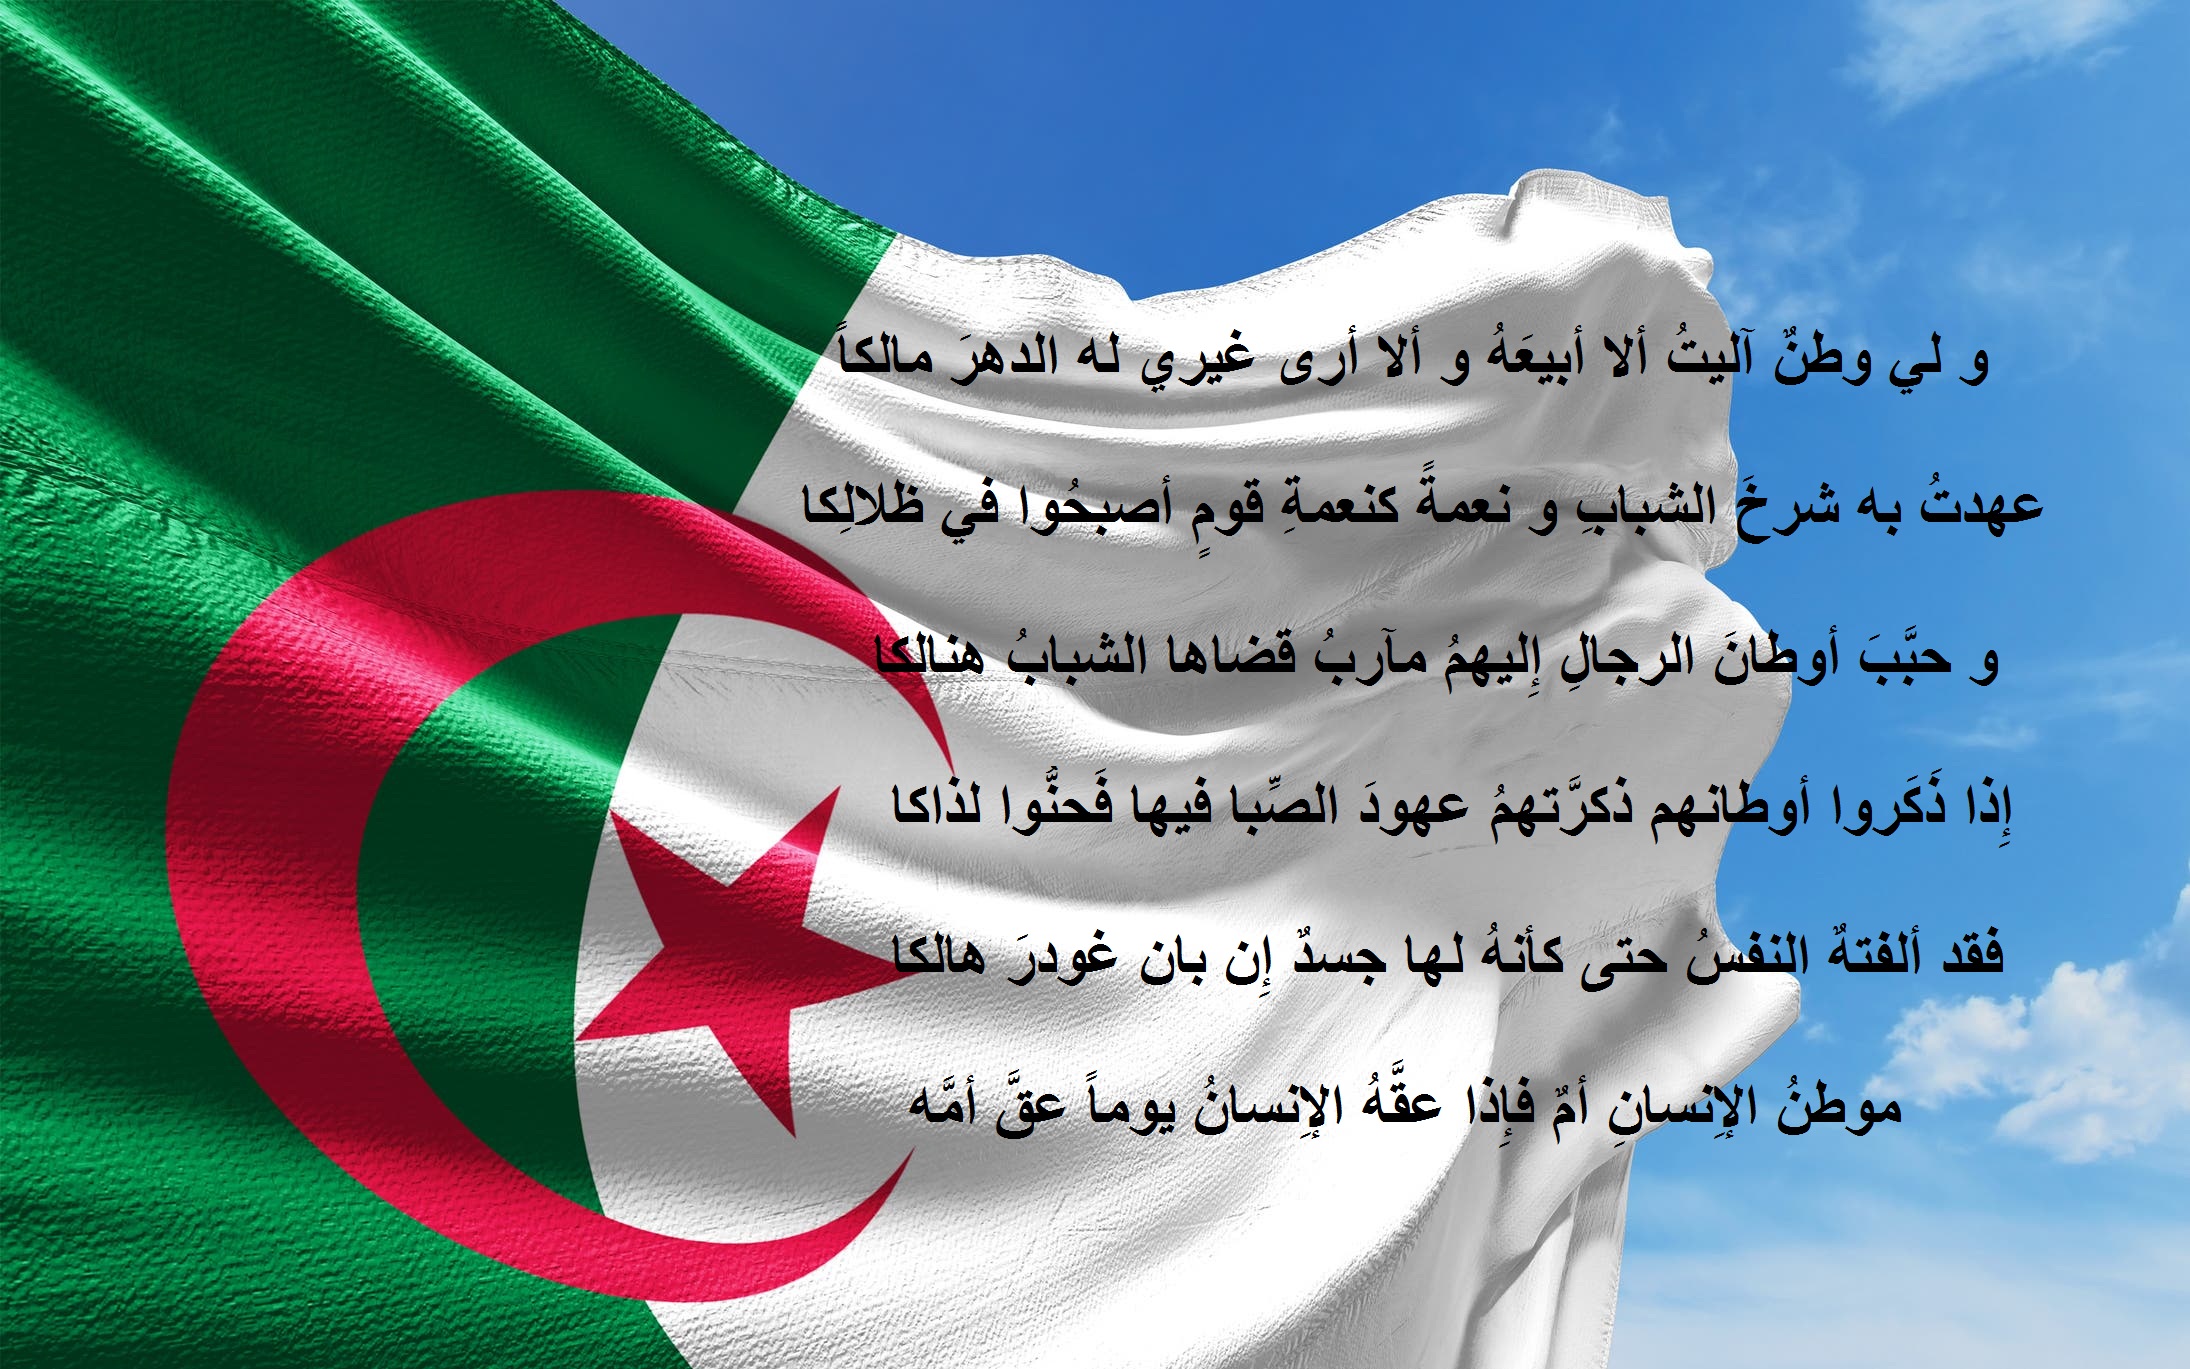 علم الجزائر مكتوب عليه أبيات شعر جميلة عن الوطن.